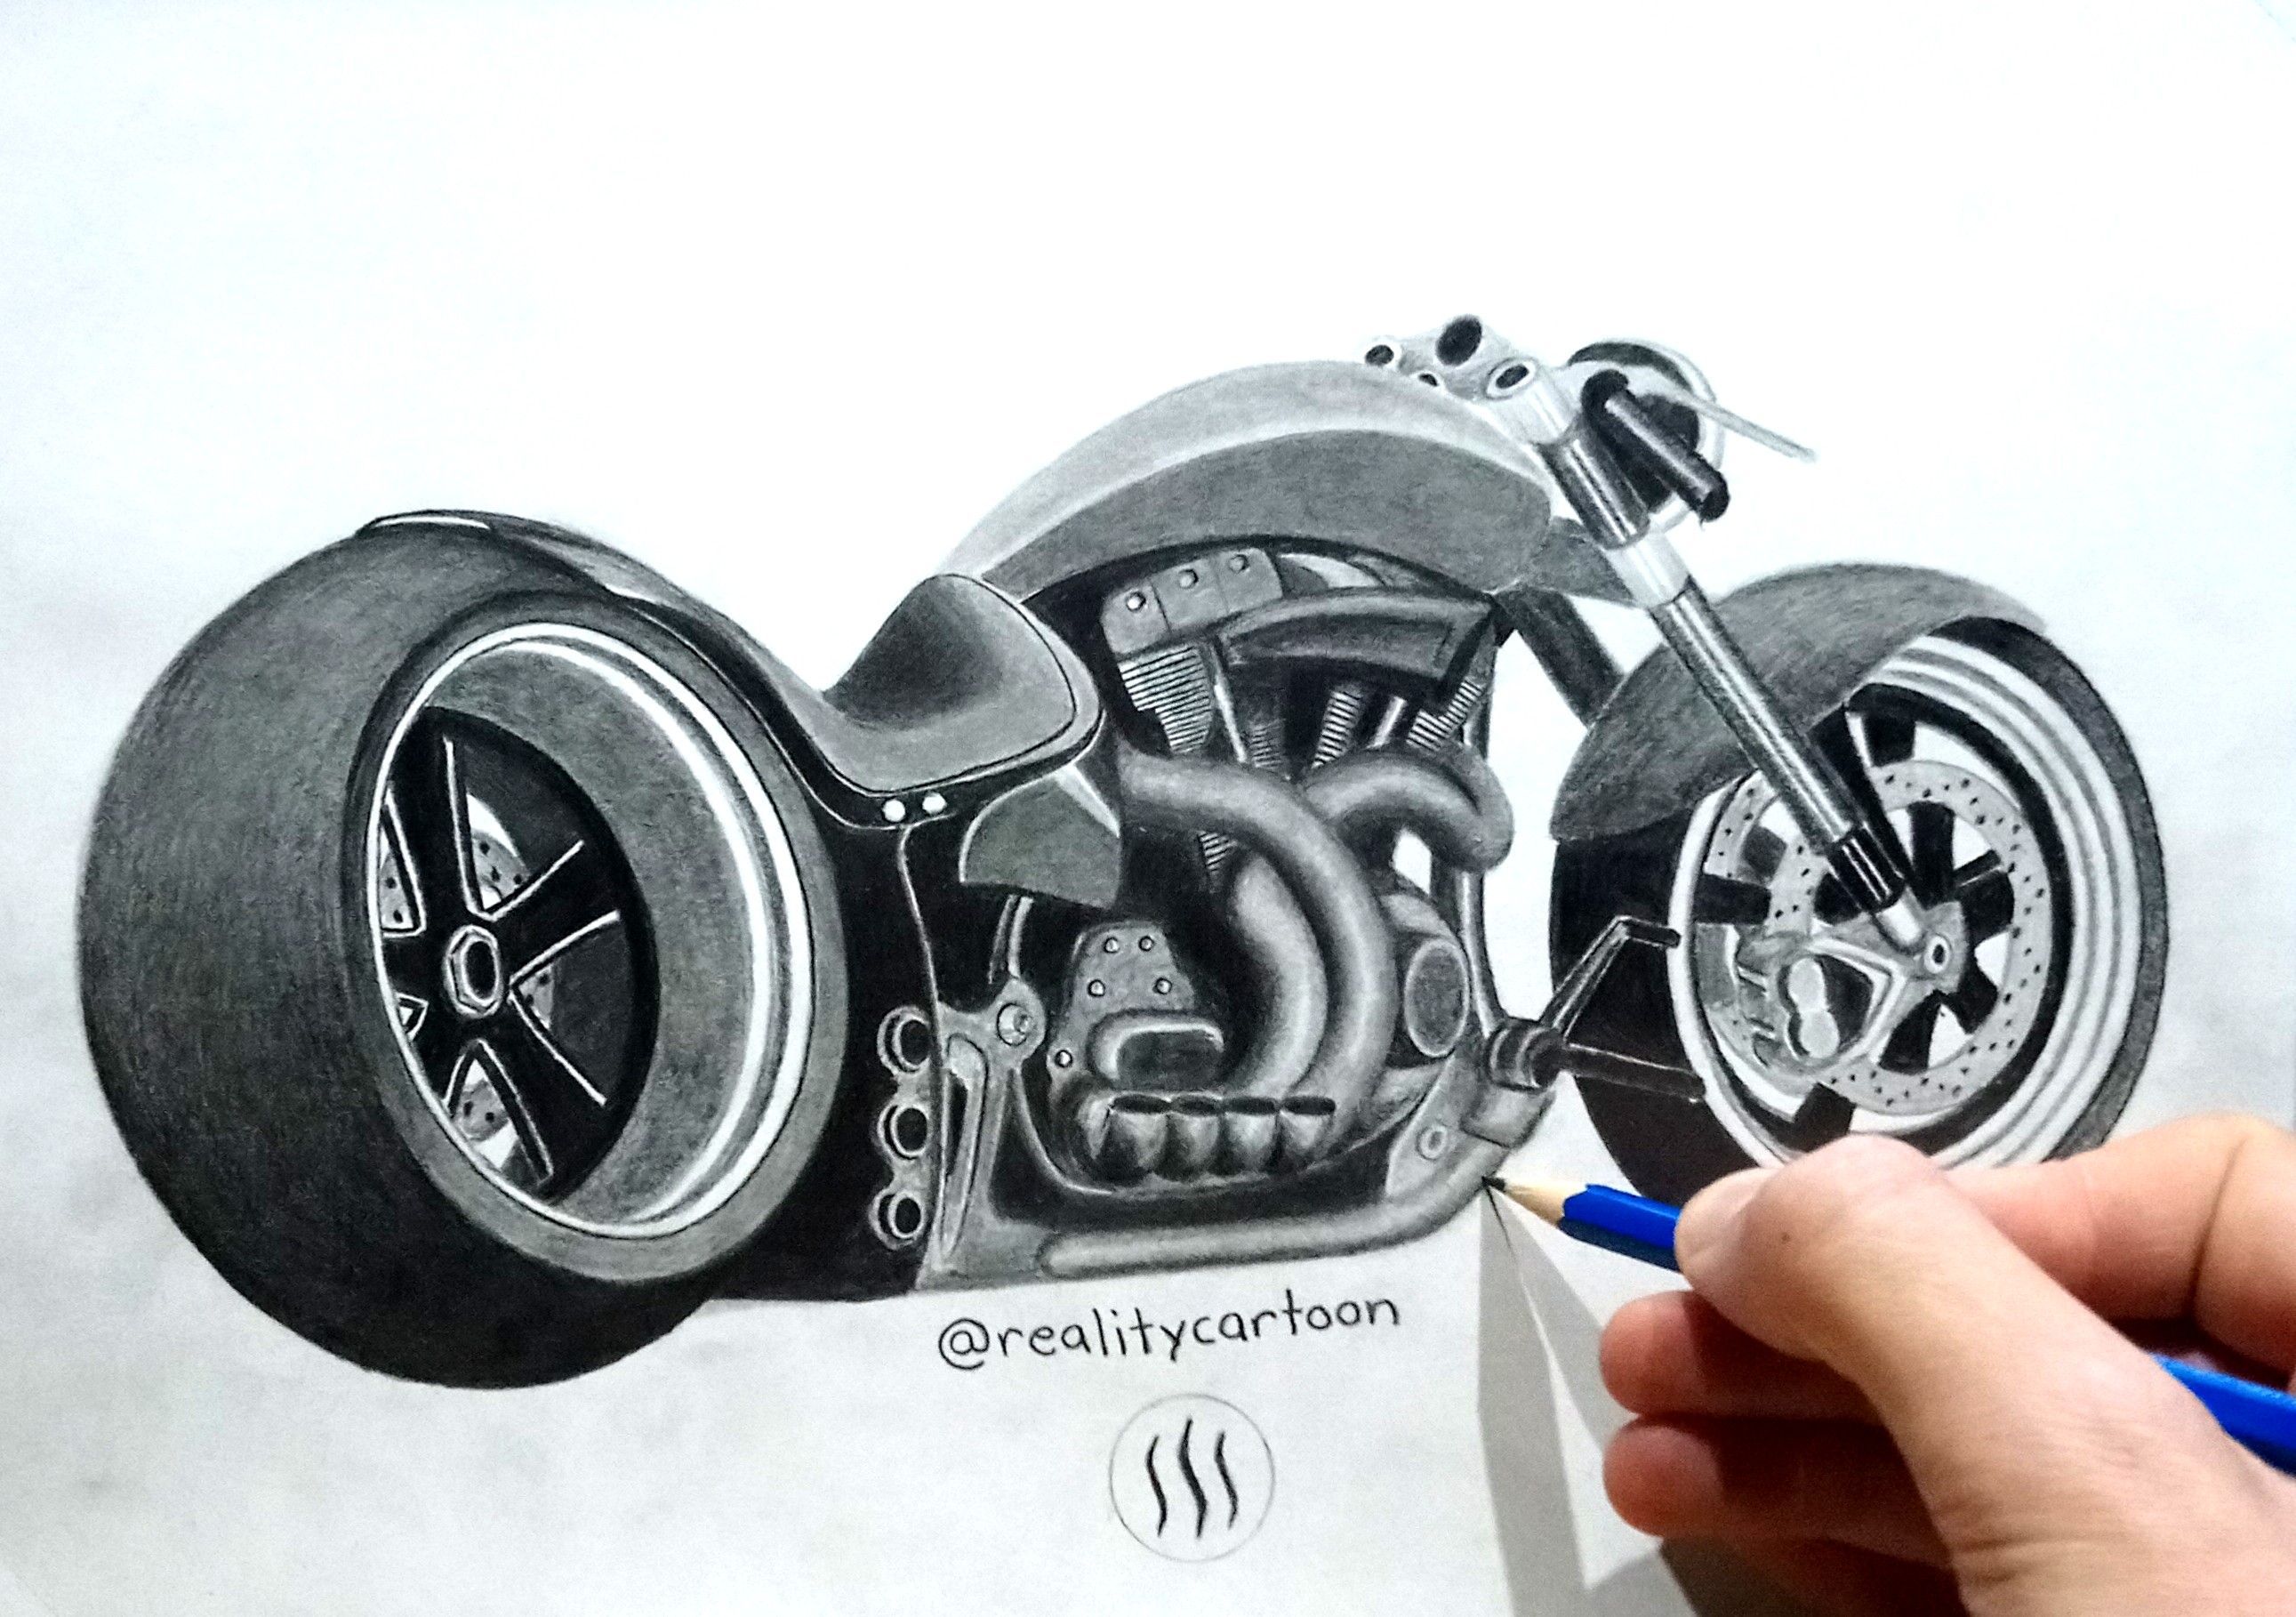 Motorcycle Tutorial